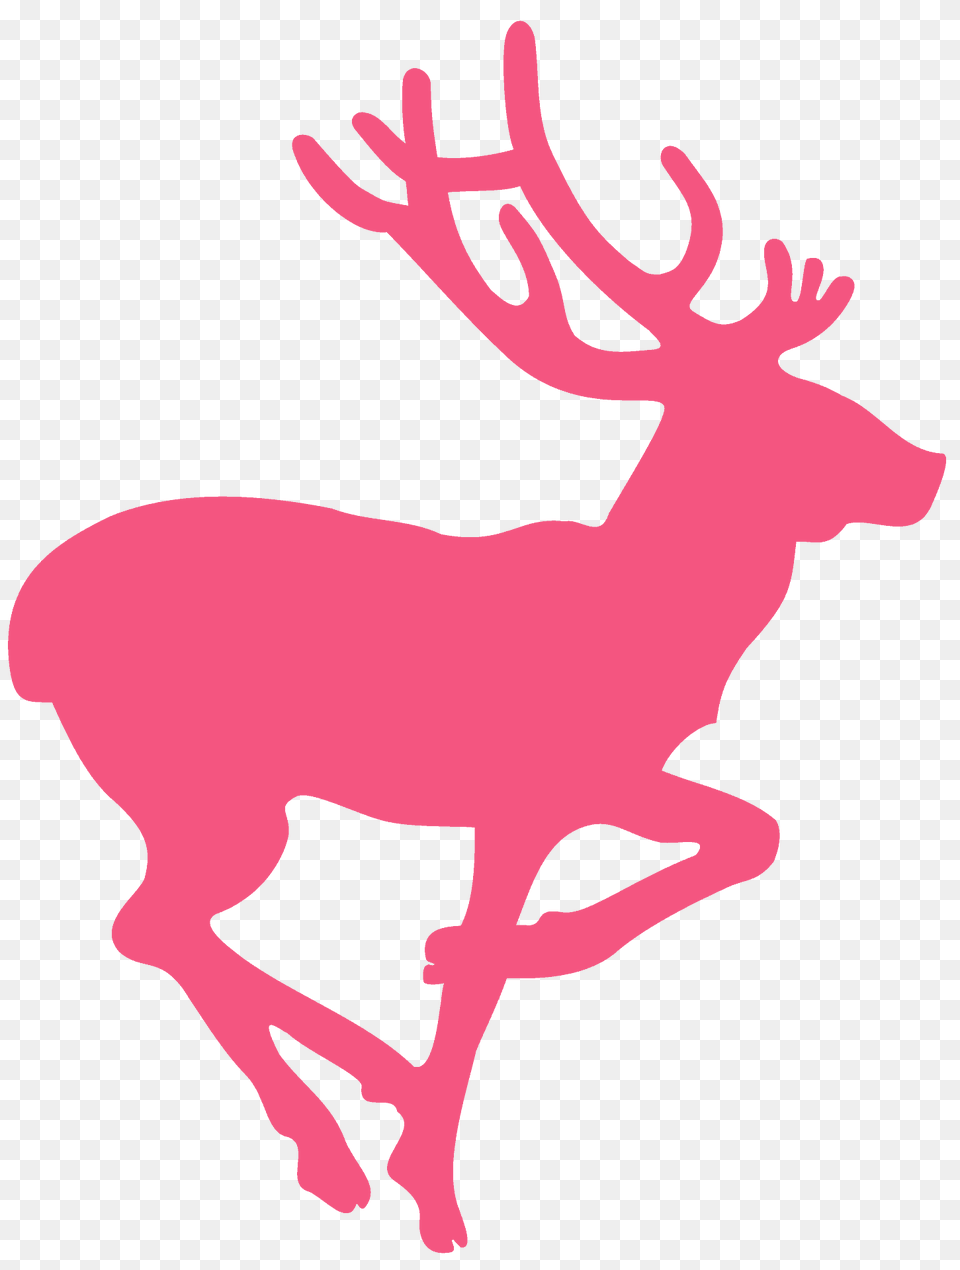 Running Deer Silhouette, Animal, Mammal, Wildlife, Elk Png Image